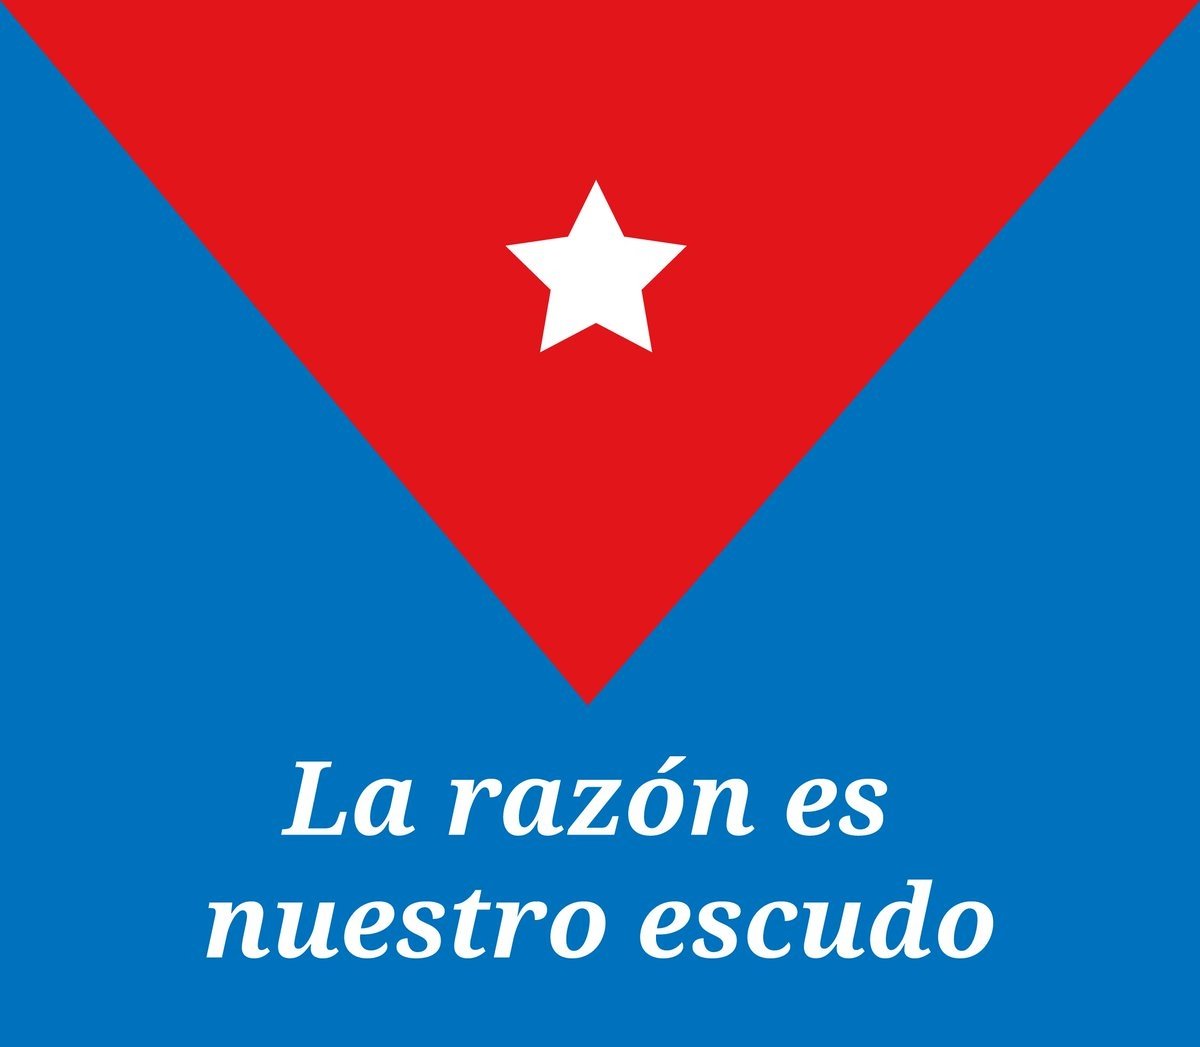 @figlx2 @DiazCanelB @PresidenciaCuba @AbelPrieto11 @FrankDCub @rauldominguezb2 @Reylope13 @Ivettelvarez5 @RobertoLaurenc8 @La3_millones @LaKstaana @QueenMo1204 Frente a las acciones desestabilizadoras decimos !!NO!!. No nos dejemos engañar, no hay ni habrá nunca un cambio de nuestro sistema socialista en #Cuba.
#LaRazónEsNuestroEscudo 
#SomosContinuidad
#PasiónXCuba🇨🇺